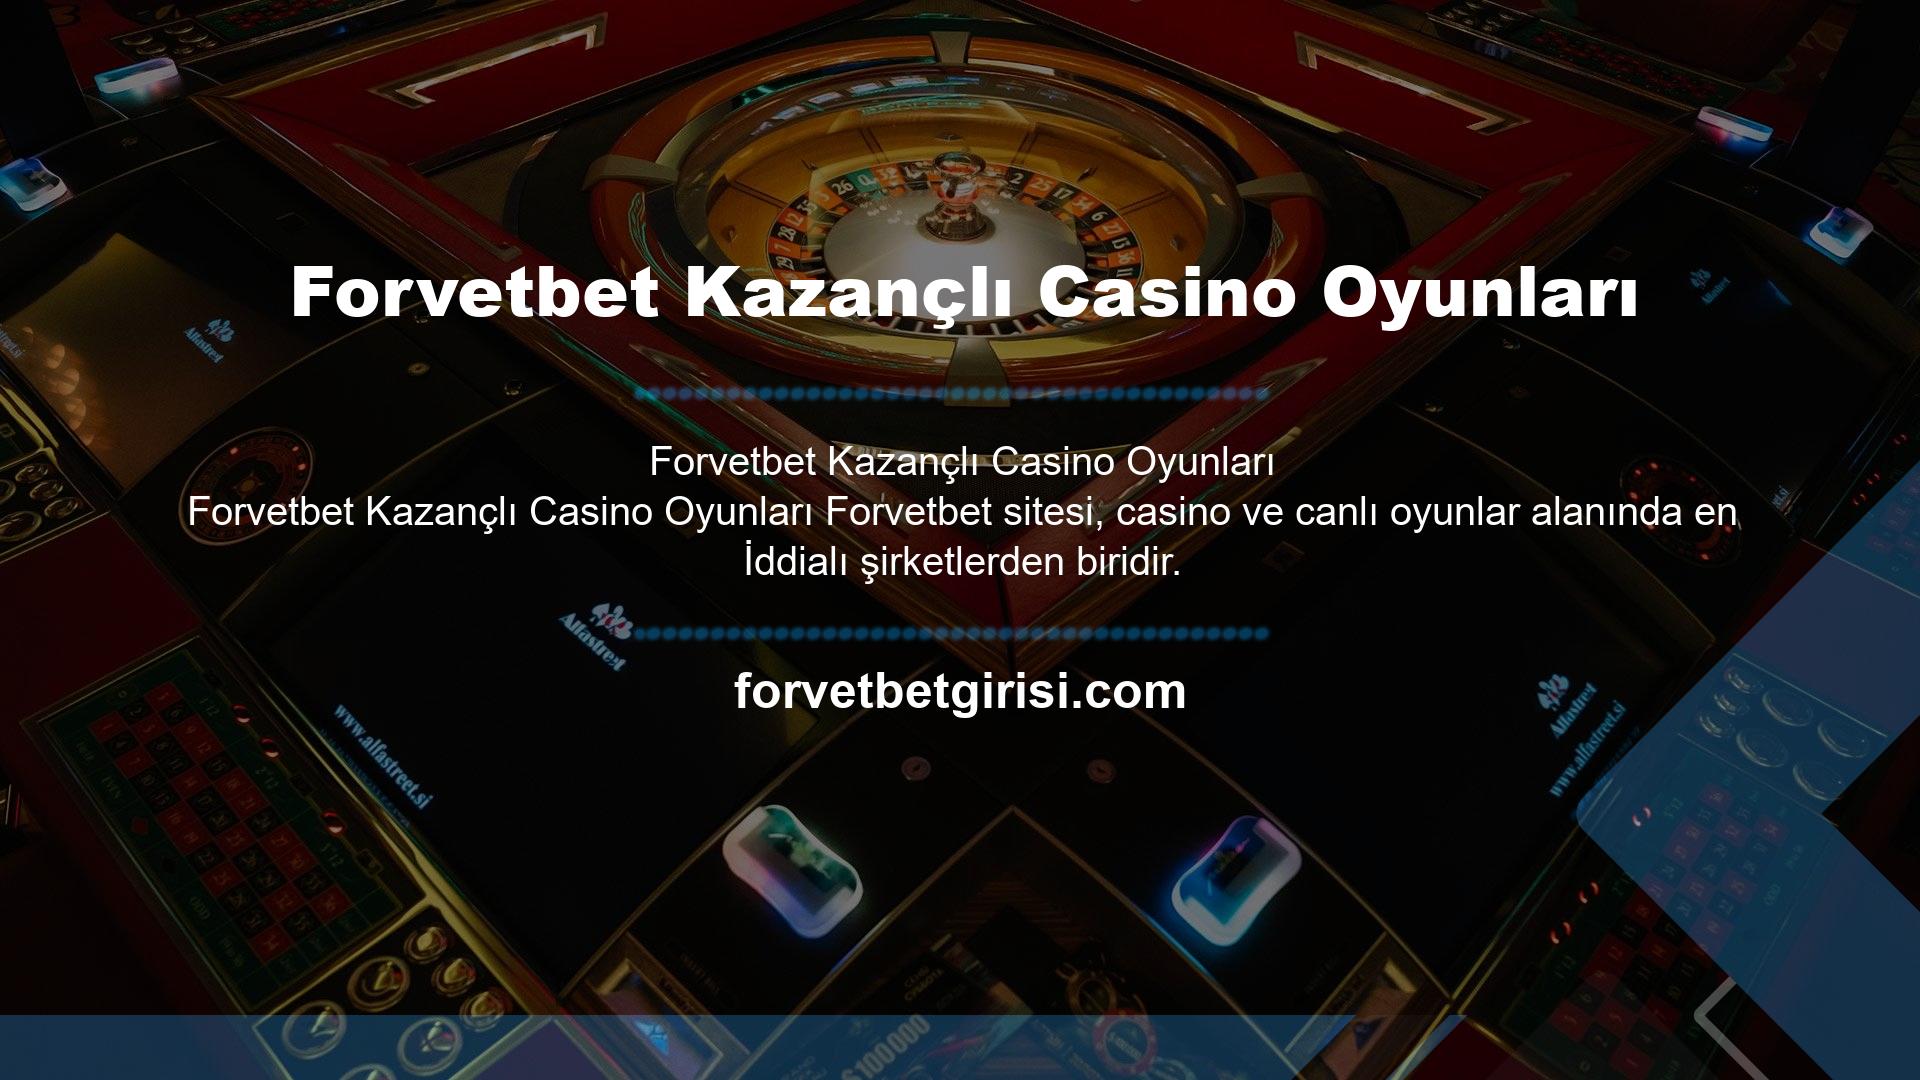 Casino oyunları söz konusu olduğunda çok çeşitli oyunlar sizi bekliyor